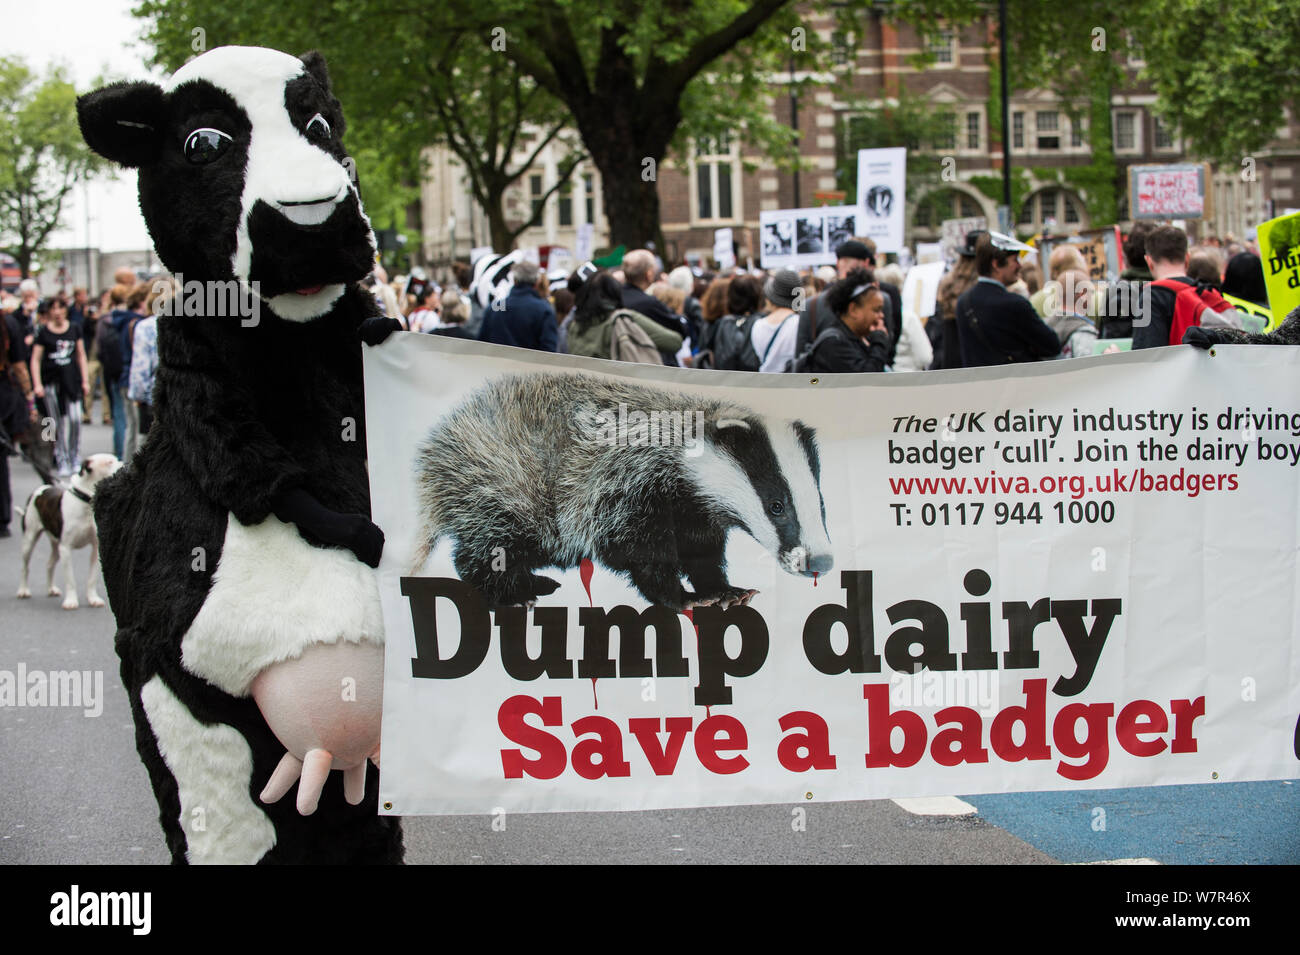 Personne s'habiller comme une vache avec un panneau qui dit 'dump dairy - Enregistrer un blaireau' encourager un boycott des produits laitiers, à l'abattage du blaireau, mars 1er juin 2013 à Londres. Usage éditorial uniquement. Banque D'Images